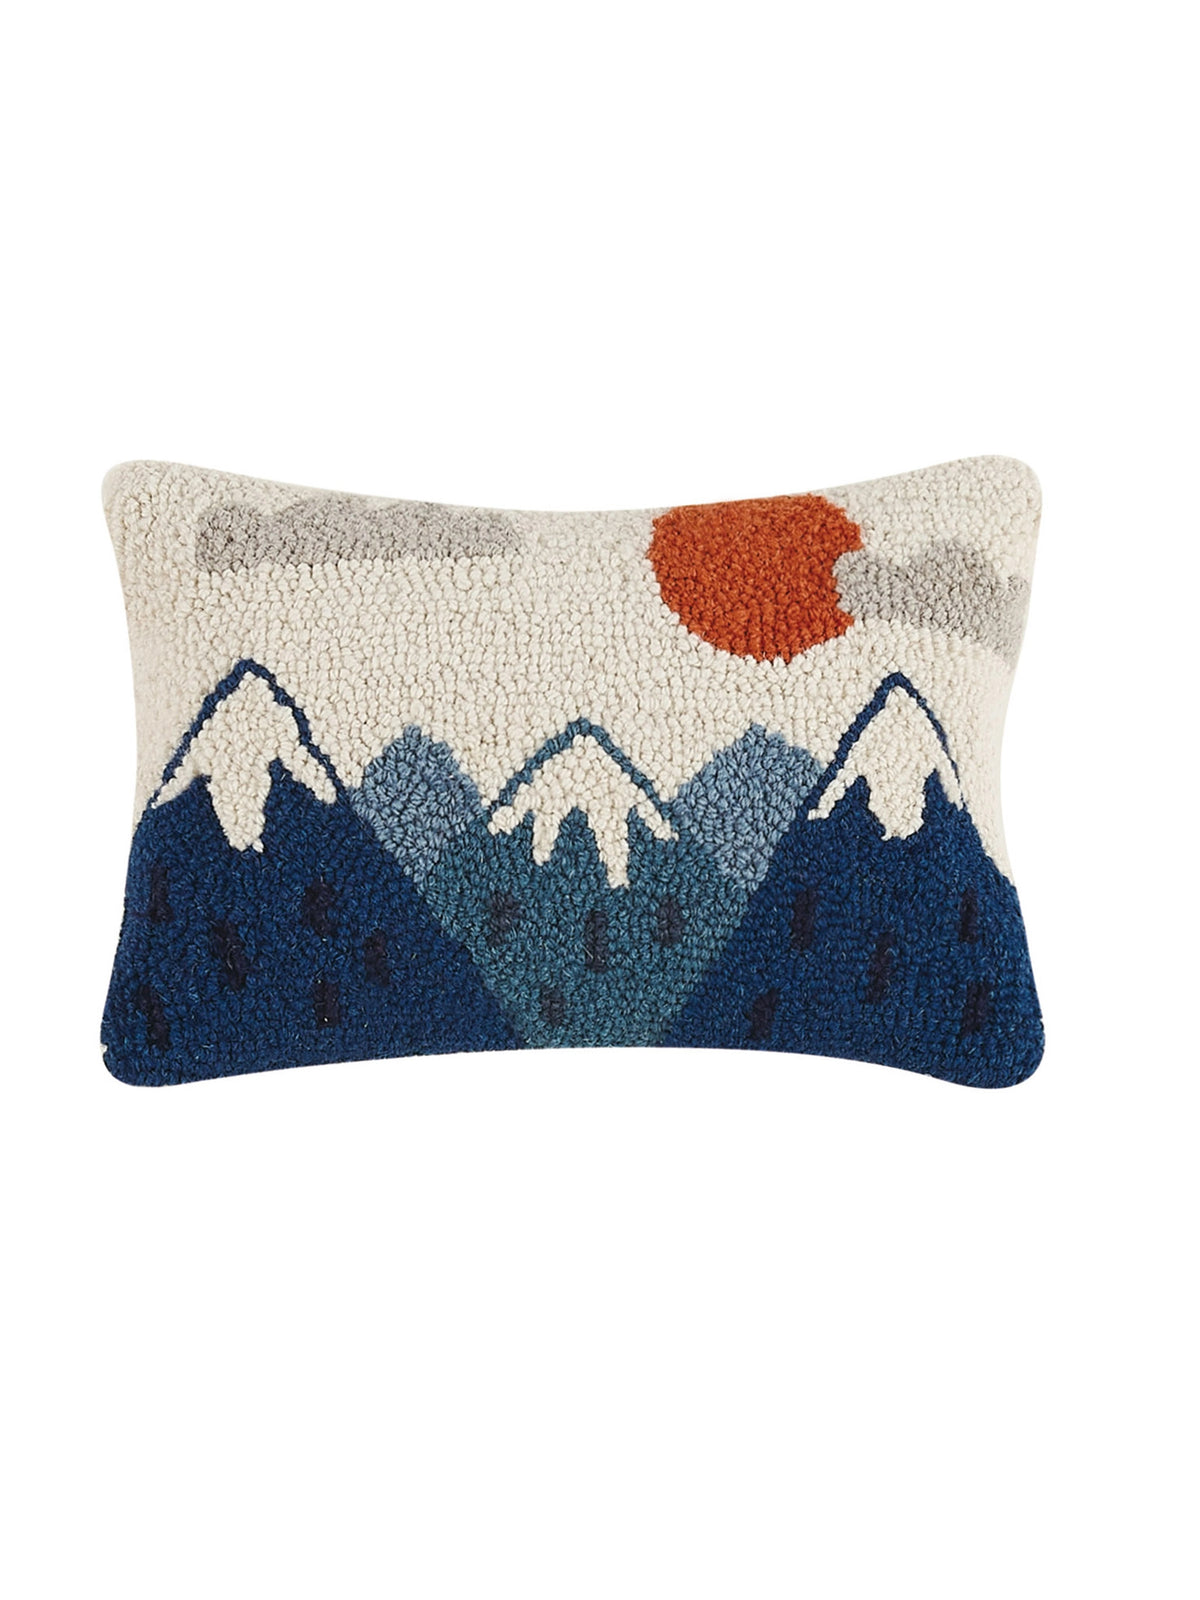 Outdoor Wool Pillows